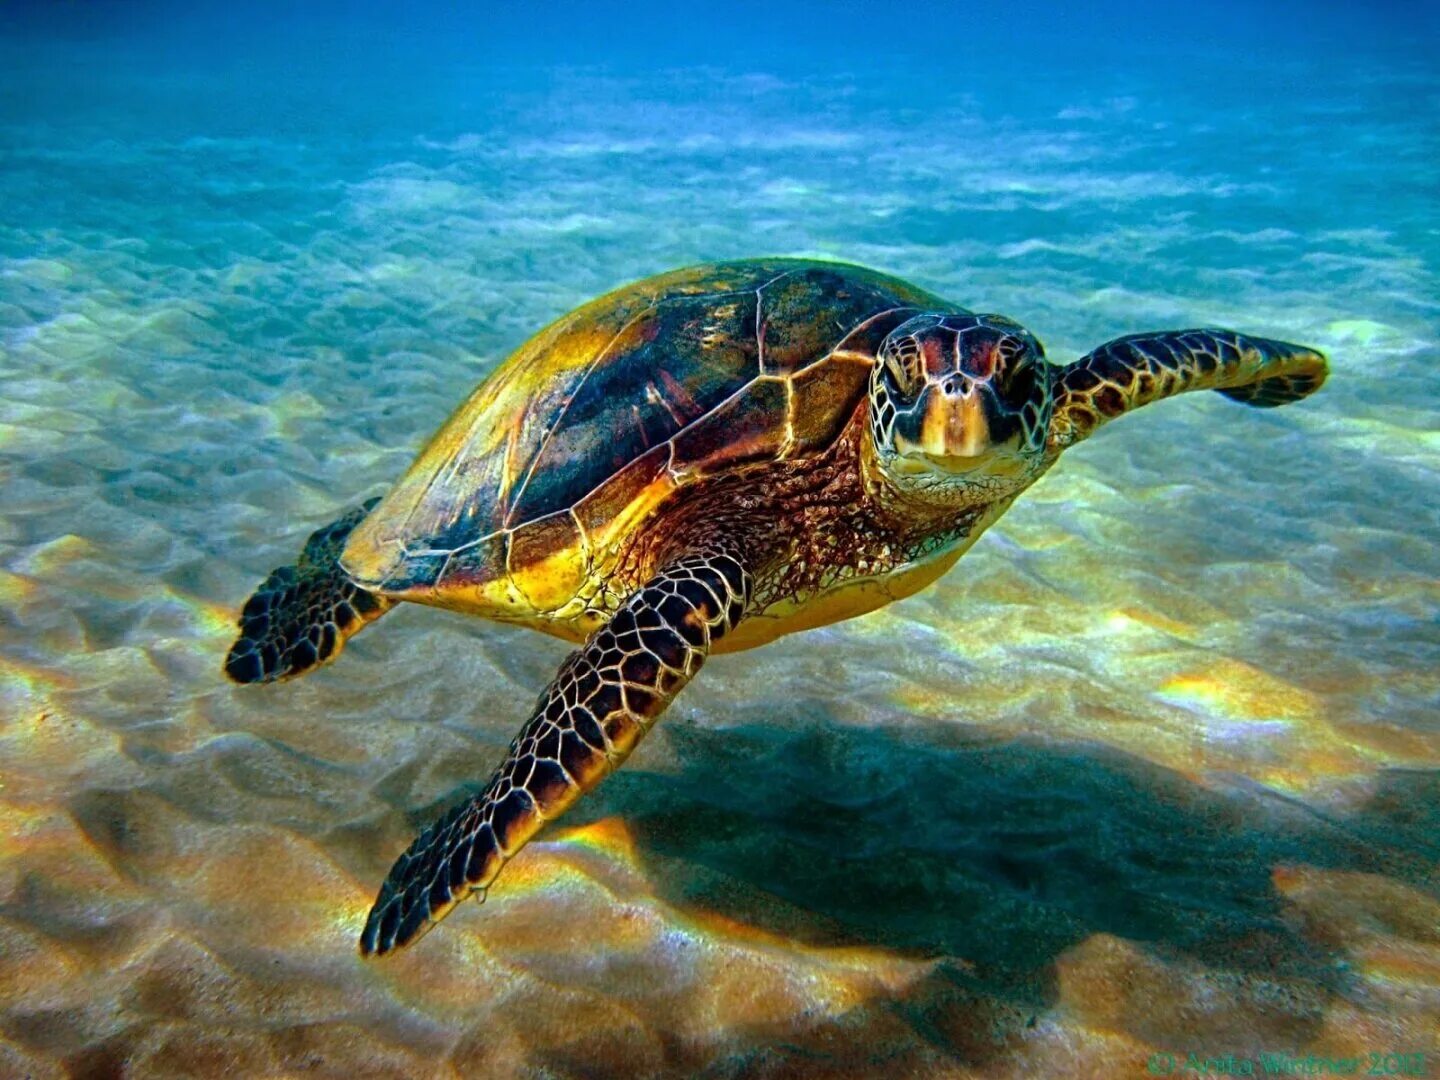 Водные животные это. Хоксбильская морская черепаха. Зеленая (суповая морская черепаха). Водоплавающая черепаха морская. Черепахи Атлантического океана.